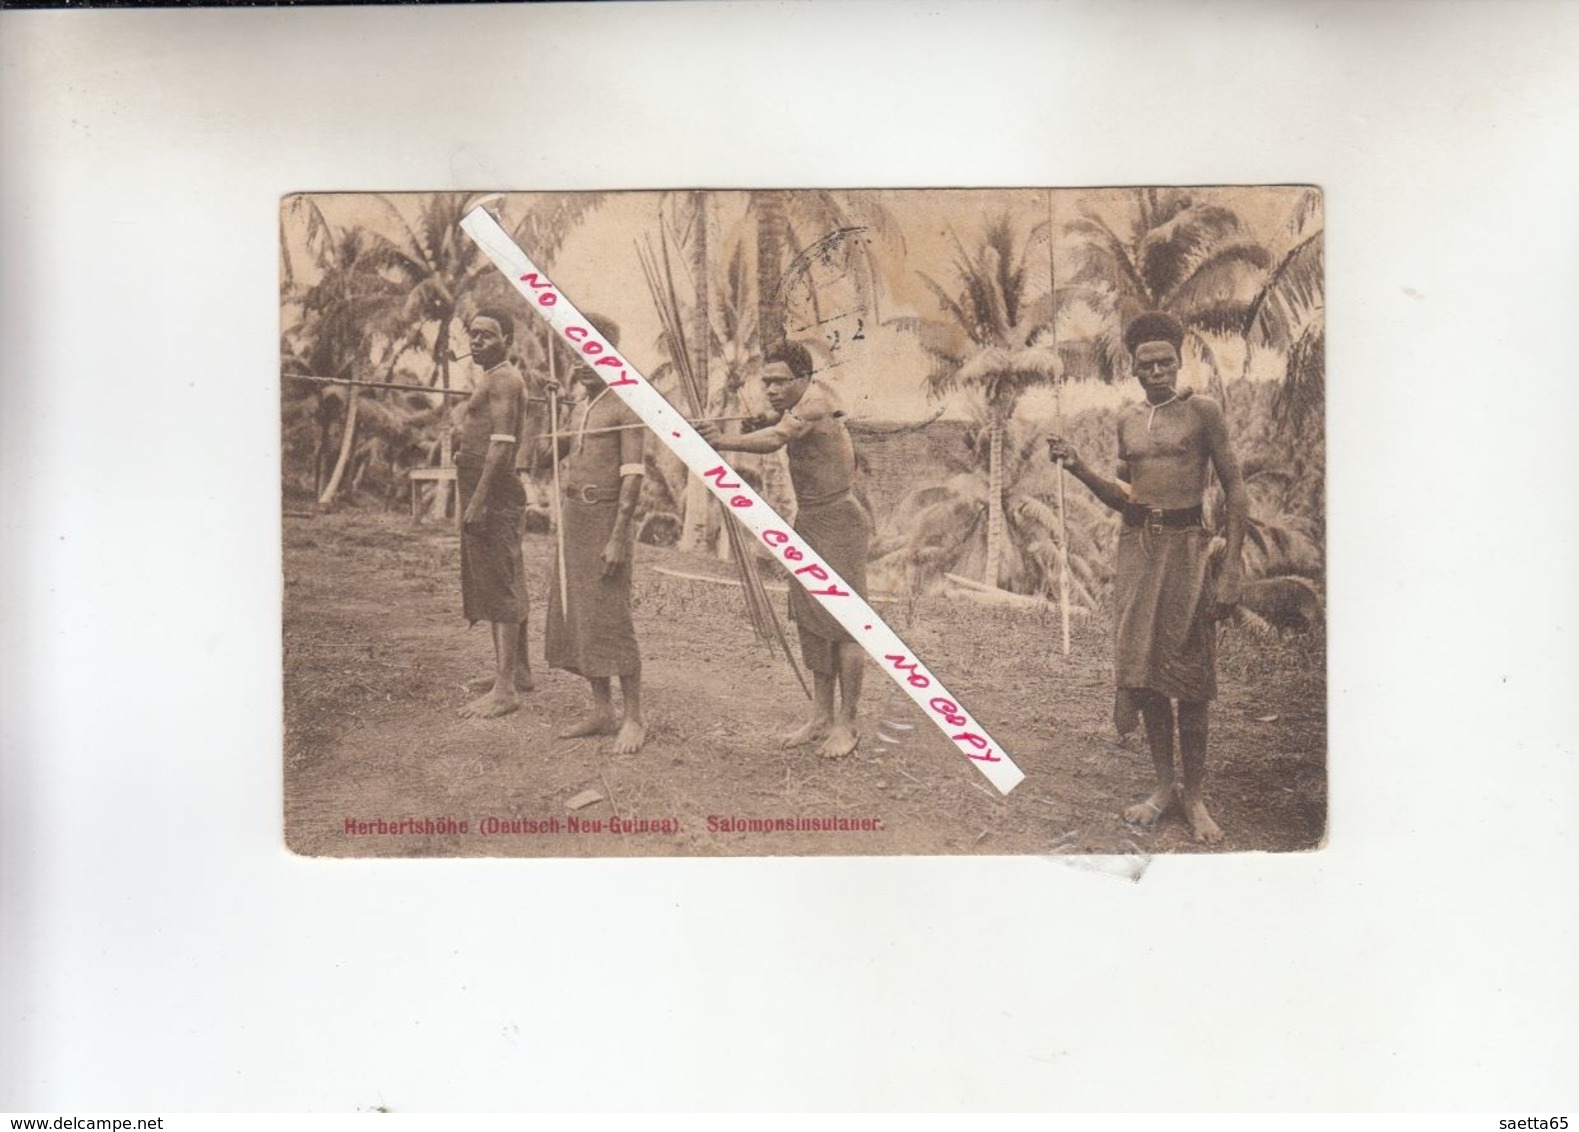 HERBERTSHOHE -DEUTSCH-NEU-GUINEA- SALOMONSINSULANER  -  1900 - Guinea